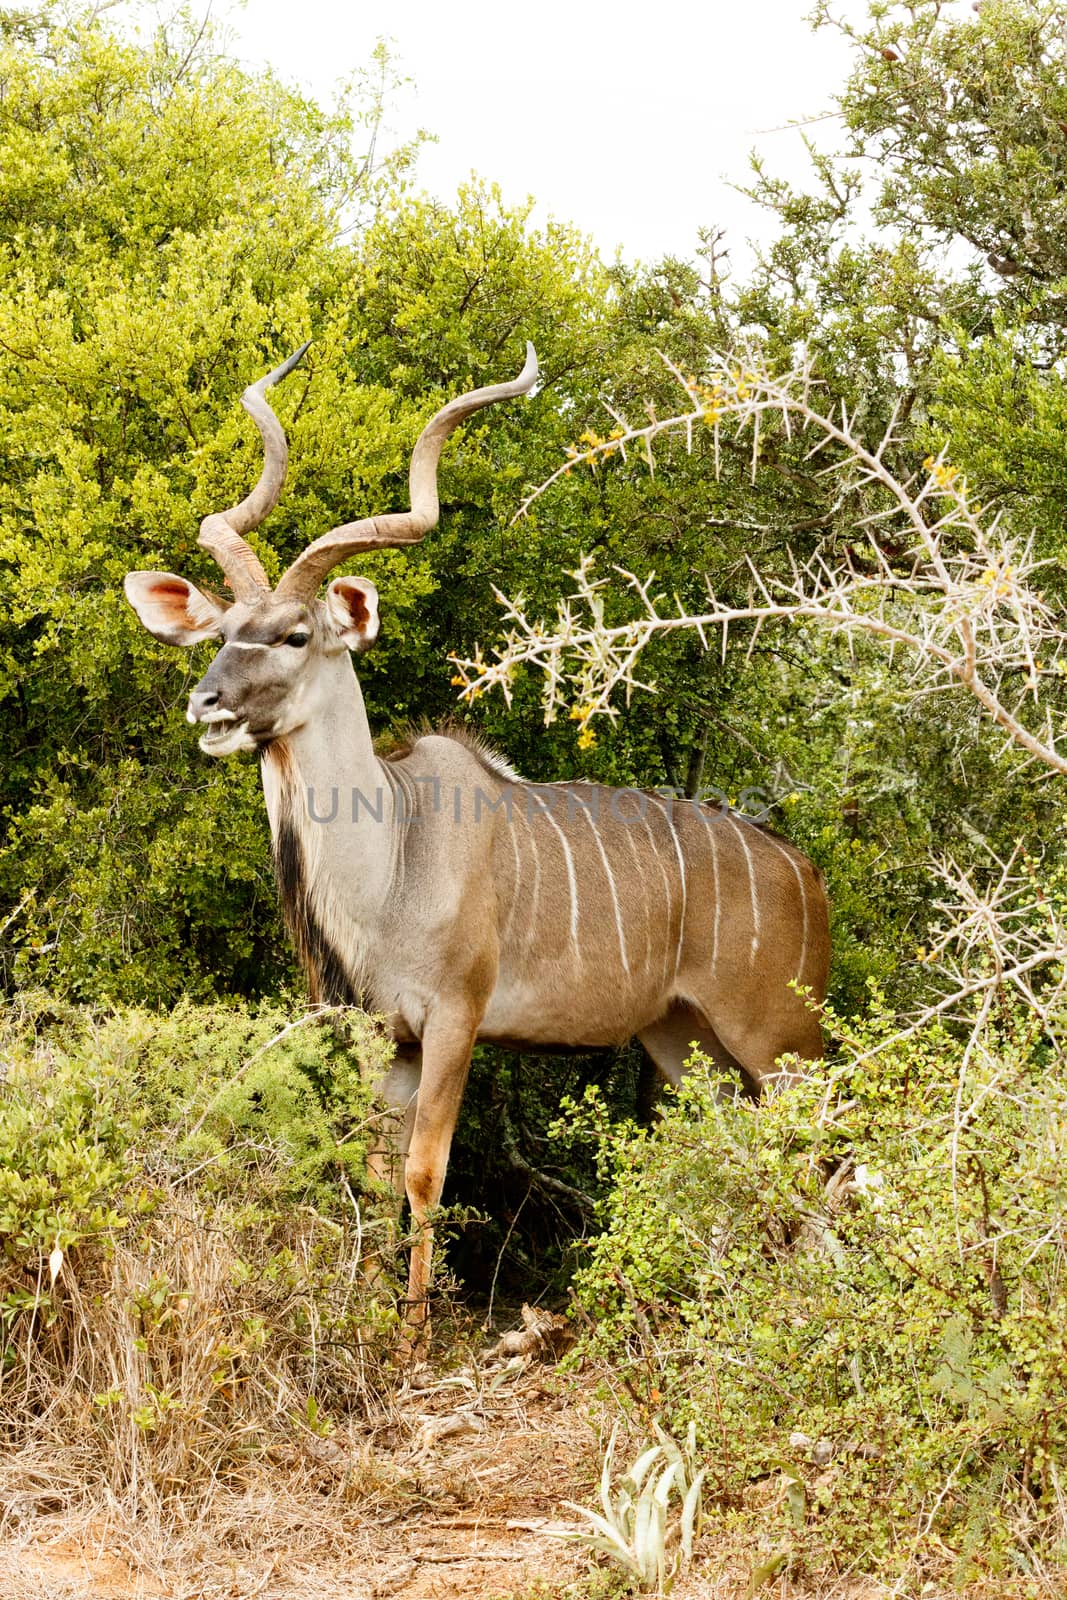 Greater Kudu - Tragelaphus strepsiceros by markdescande